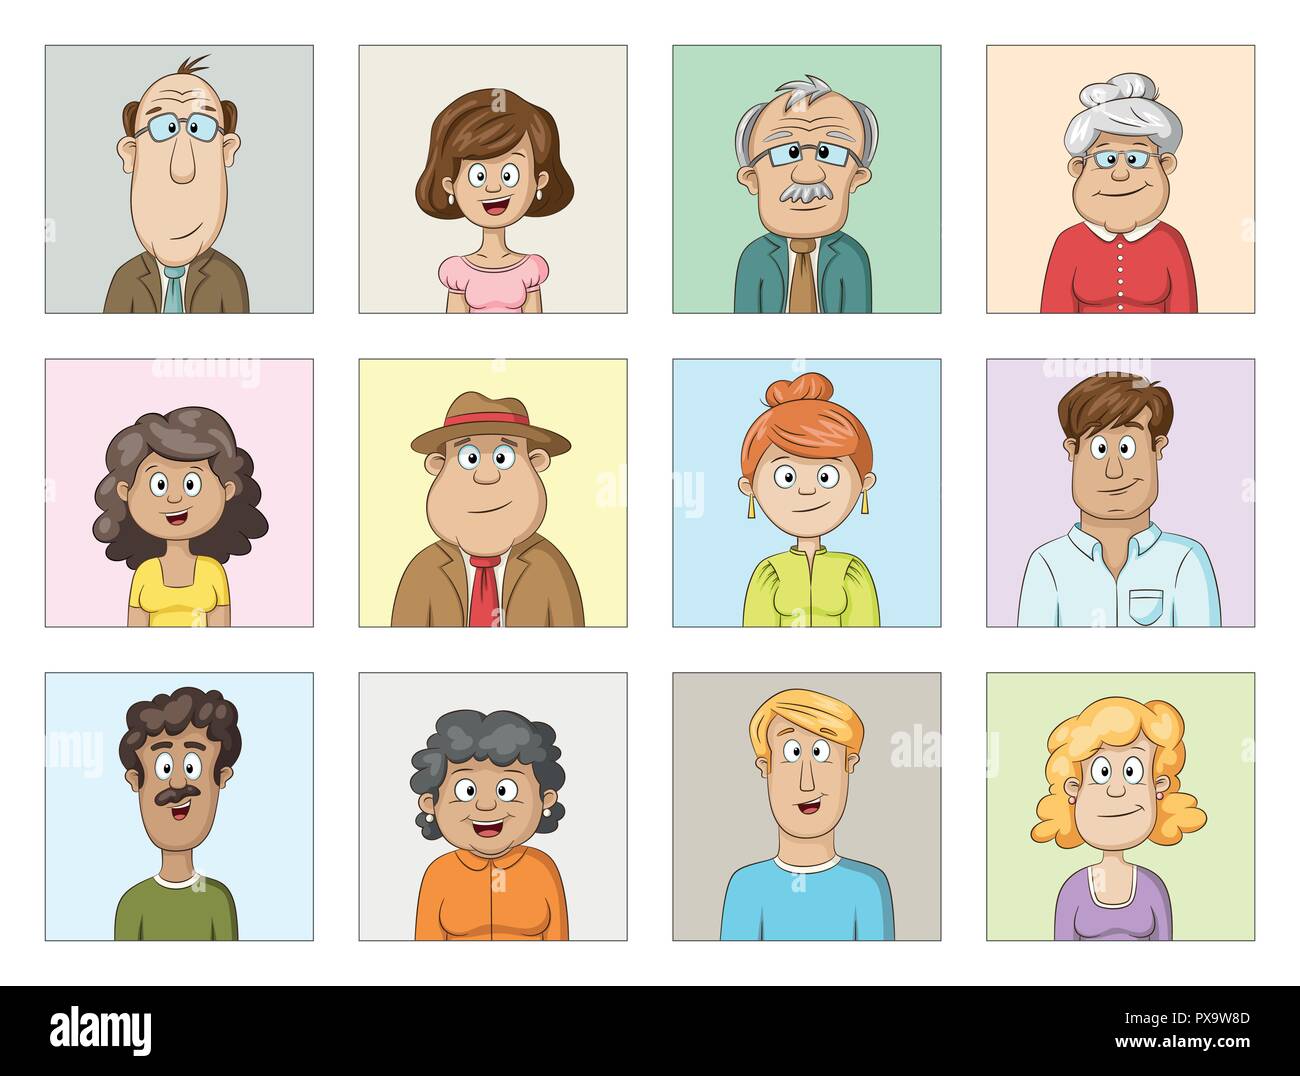 Les personnages de dessins animés avatars collection, des gens d'âges différents Illustration de Vecteur